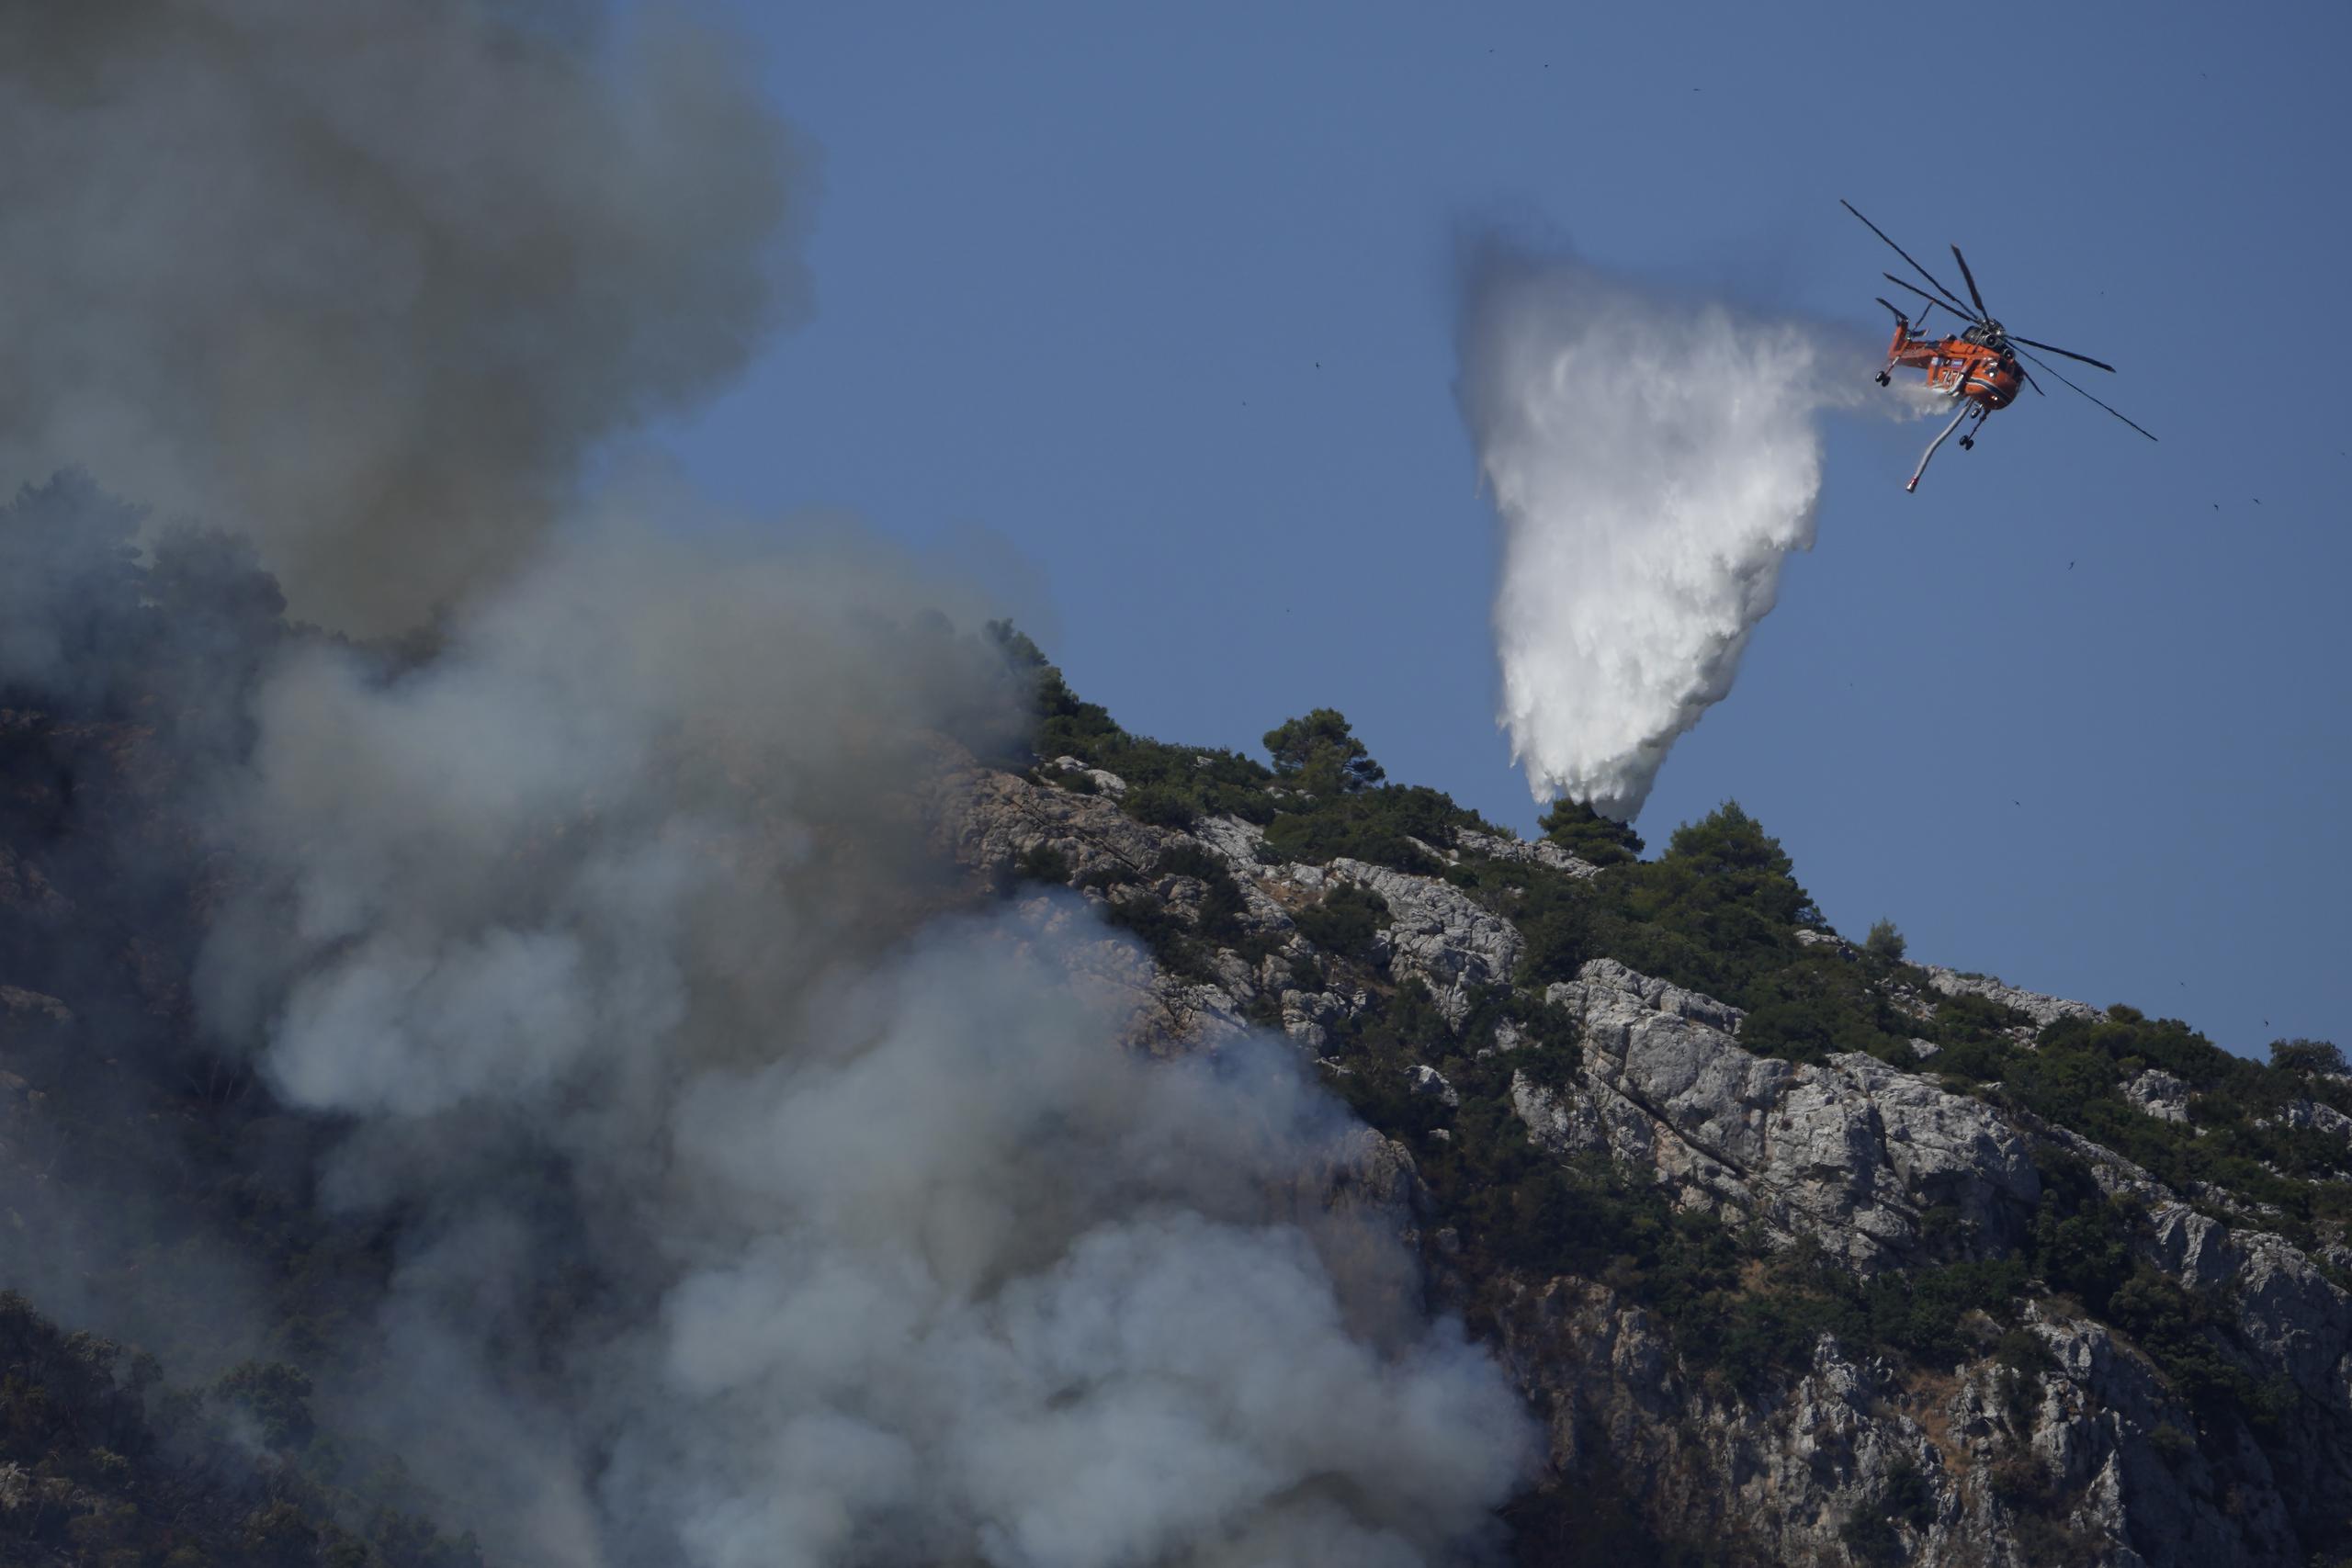 Un helicóptero dejaba caer ague esta mañana sobre el incendio cercano a Malakasa, al norte de Atenas, región en la que se vivió una frenética evacuación el viernes.